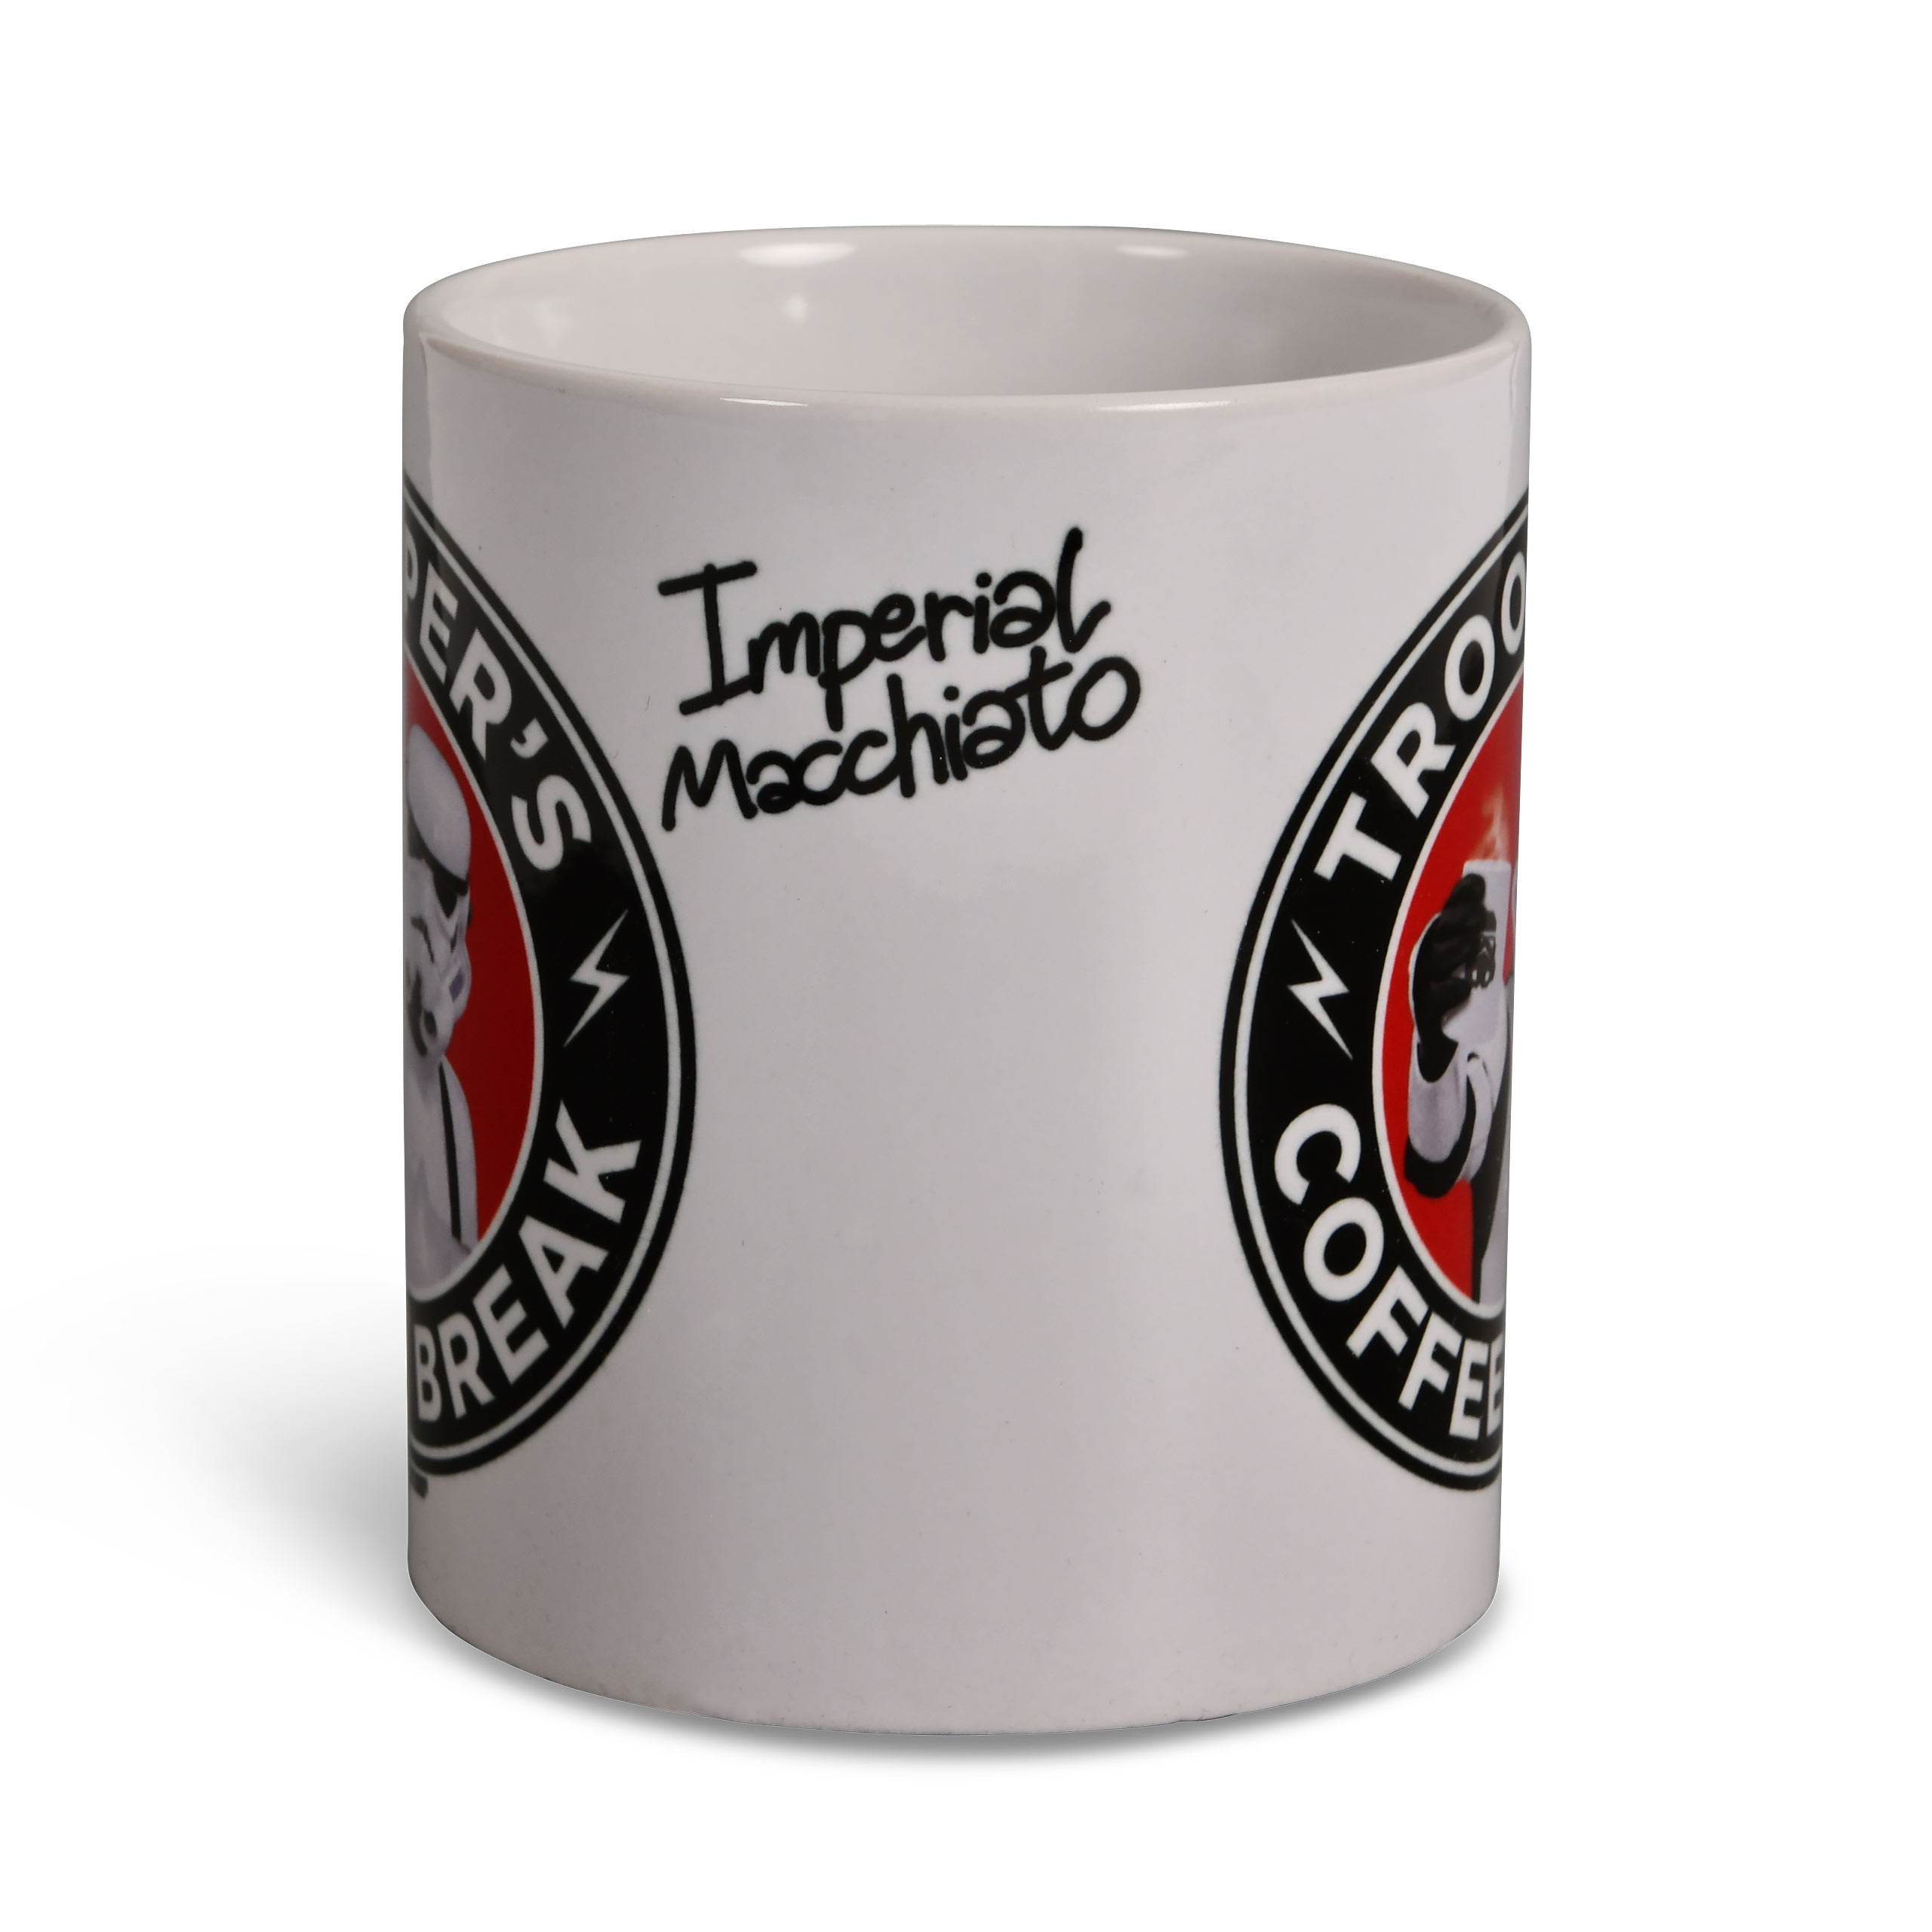 Original Stormtrooper - Troopers Coffee Break Mug